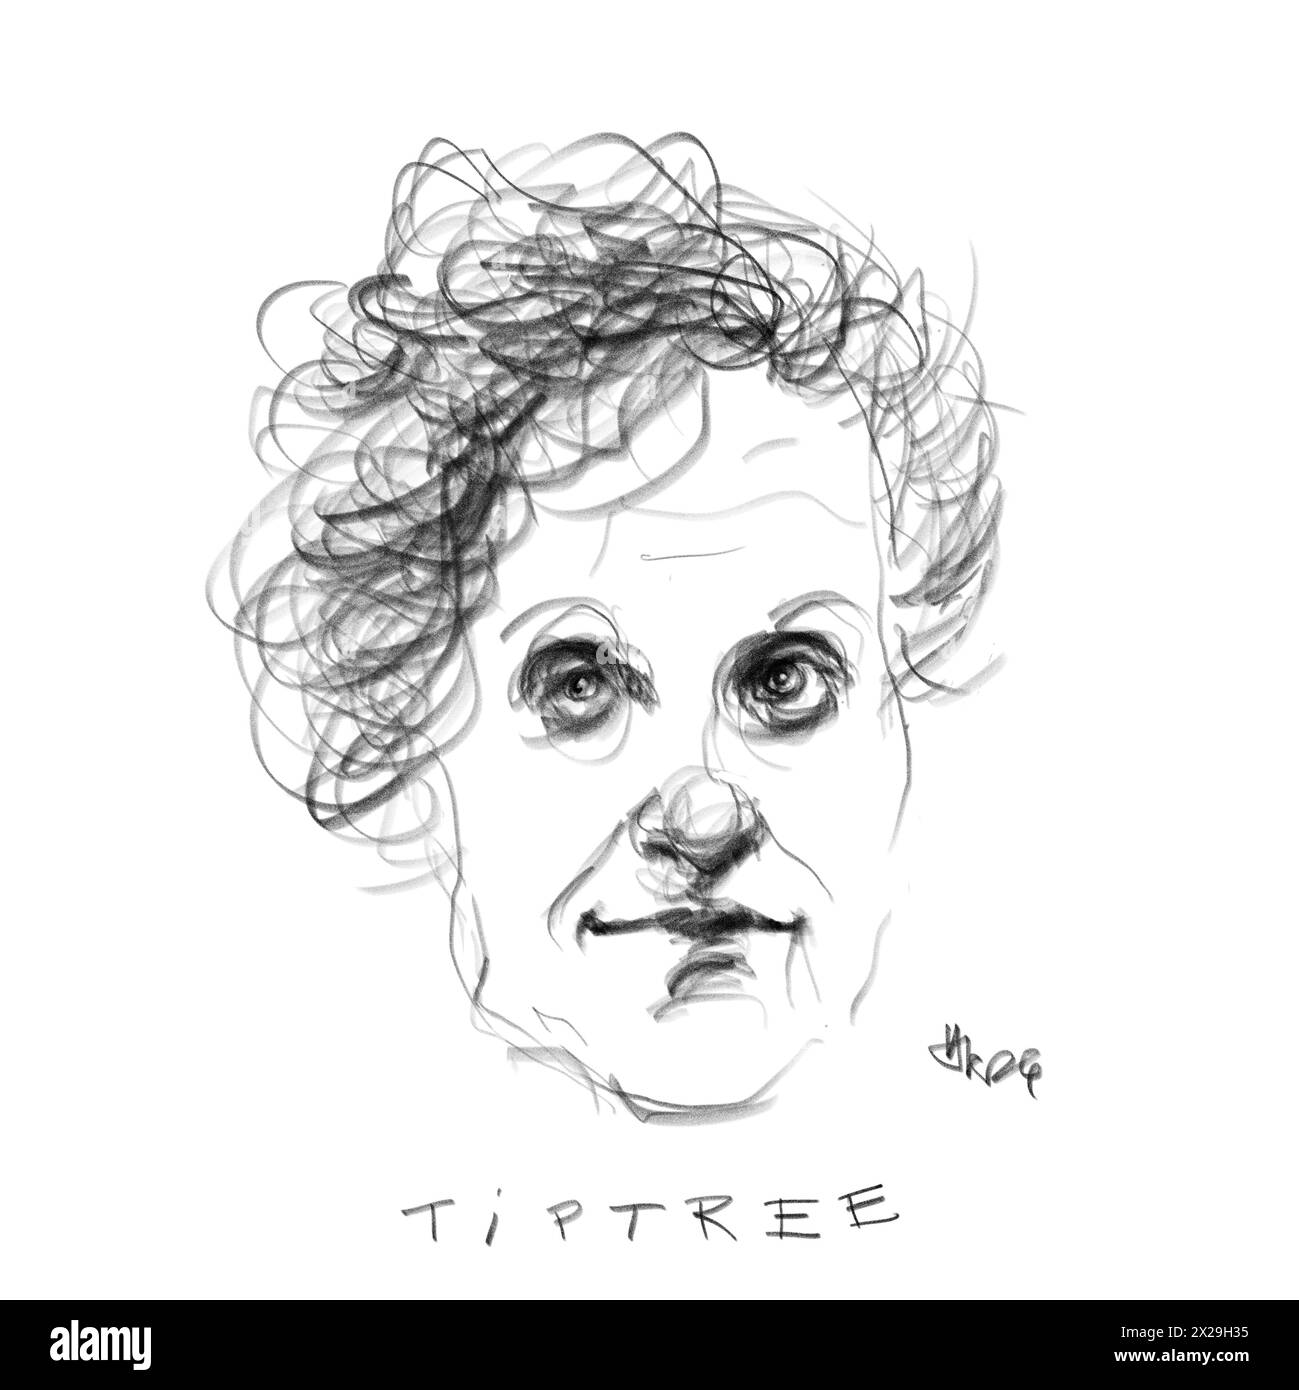 Ritratto dell'autore Tiptree Foto Stock